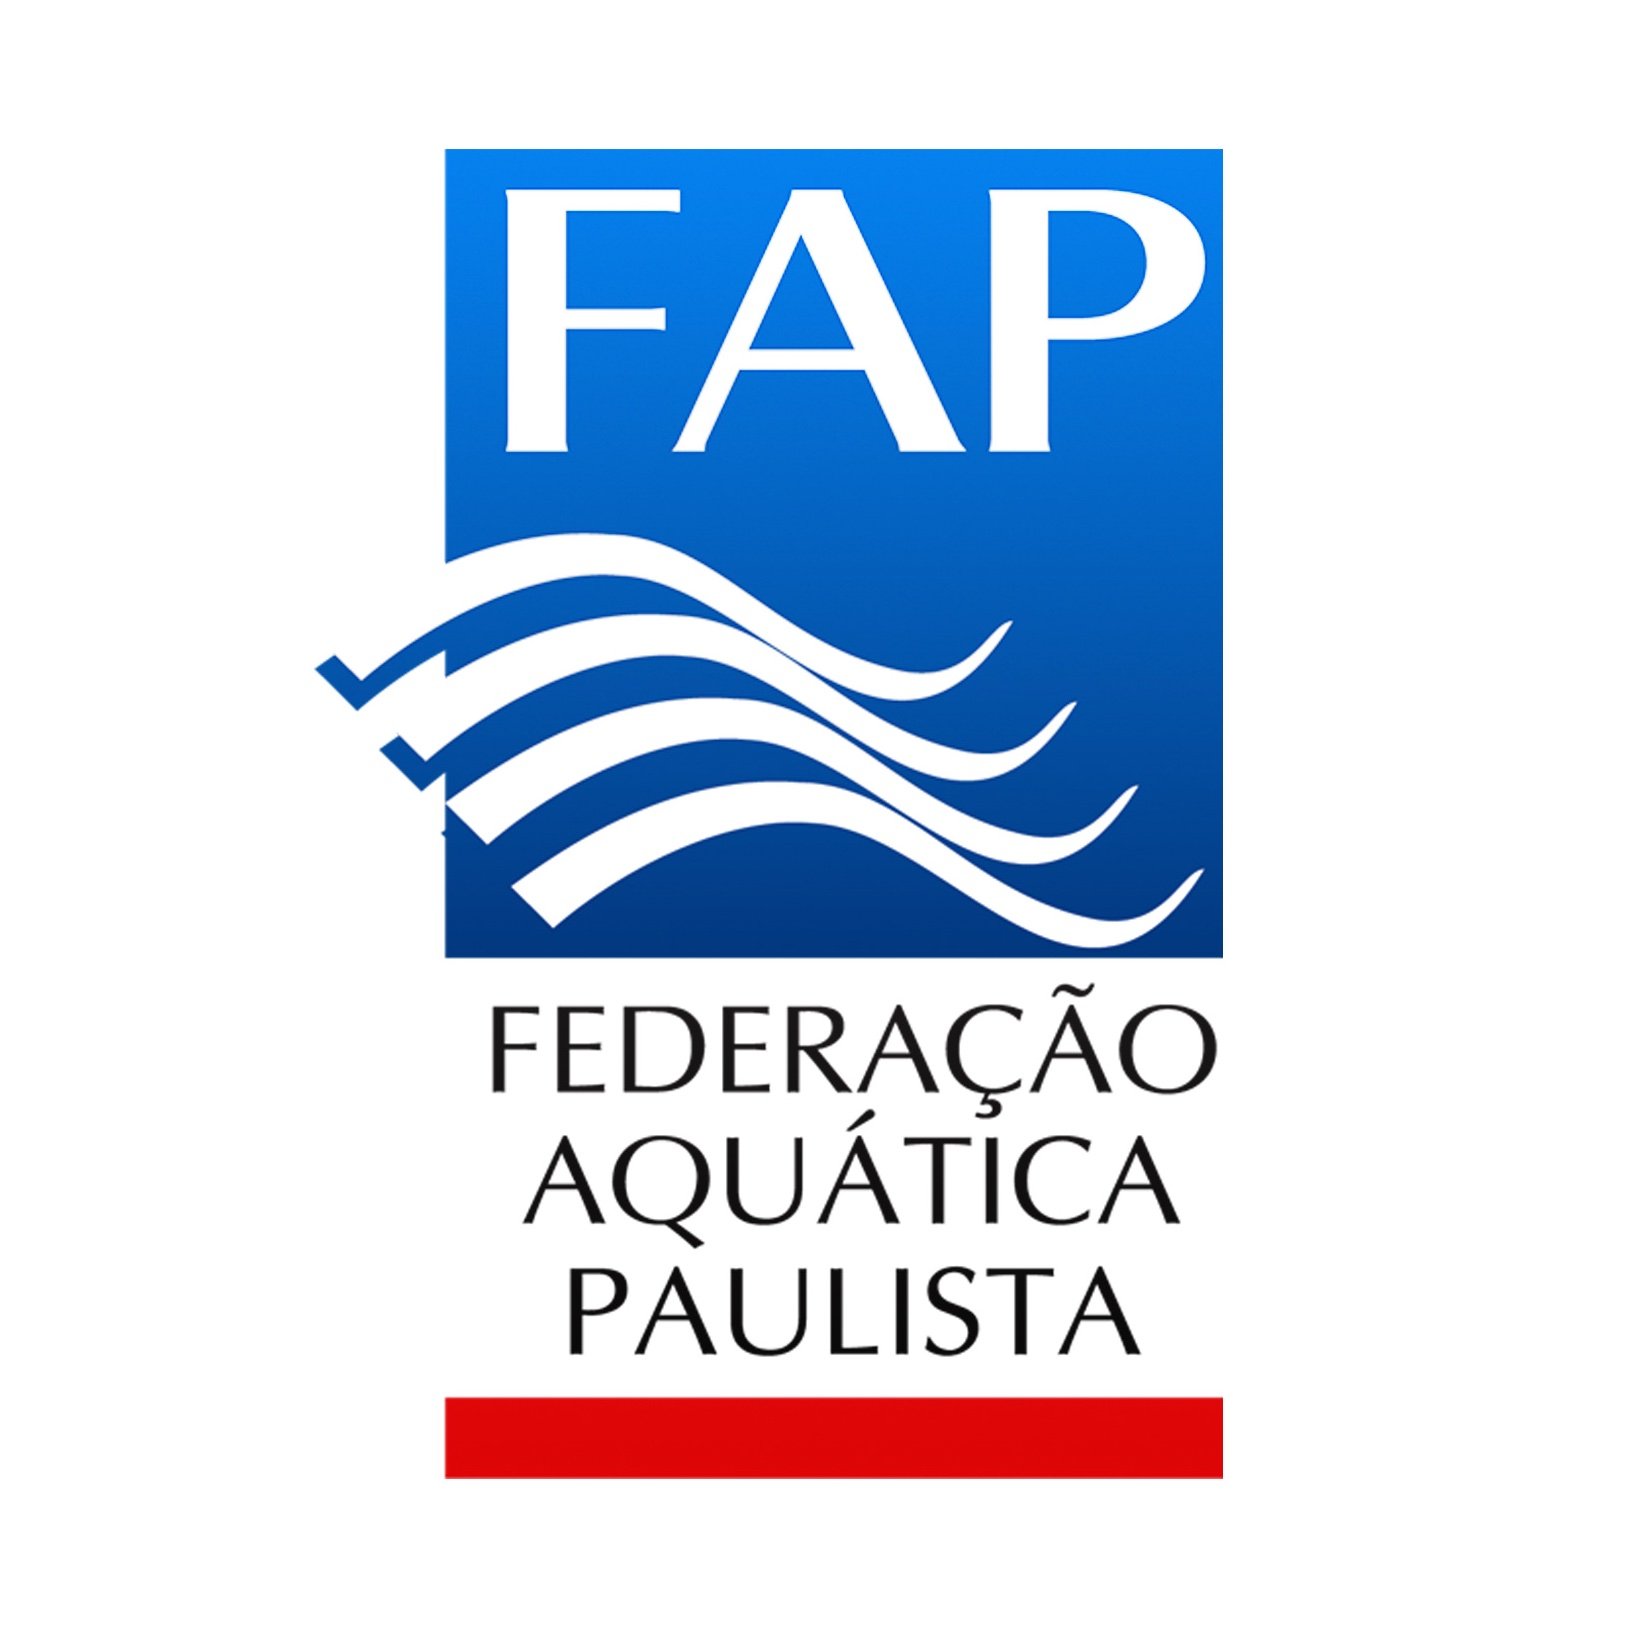 Twitter oficial da Federação Aquática Paulista, entidade responsável pela organização dos principais eventos de desportos aquáticos do estado de São Paulo.